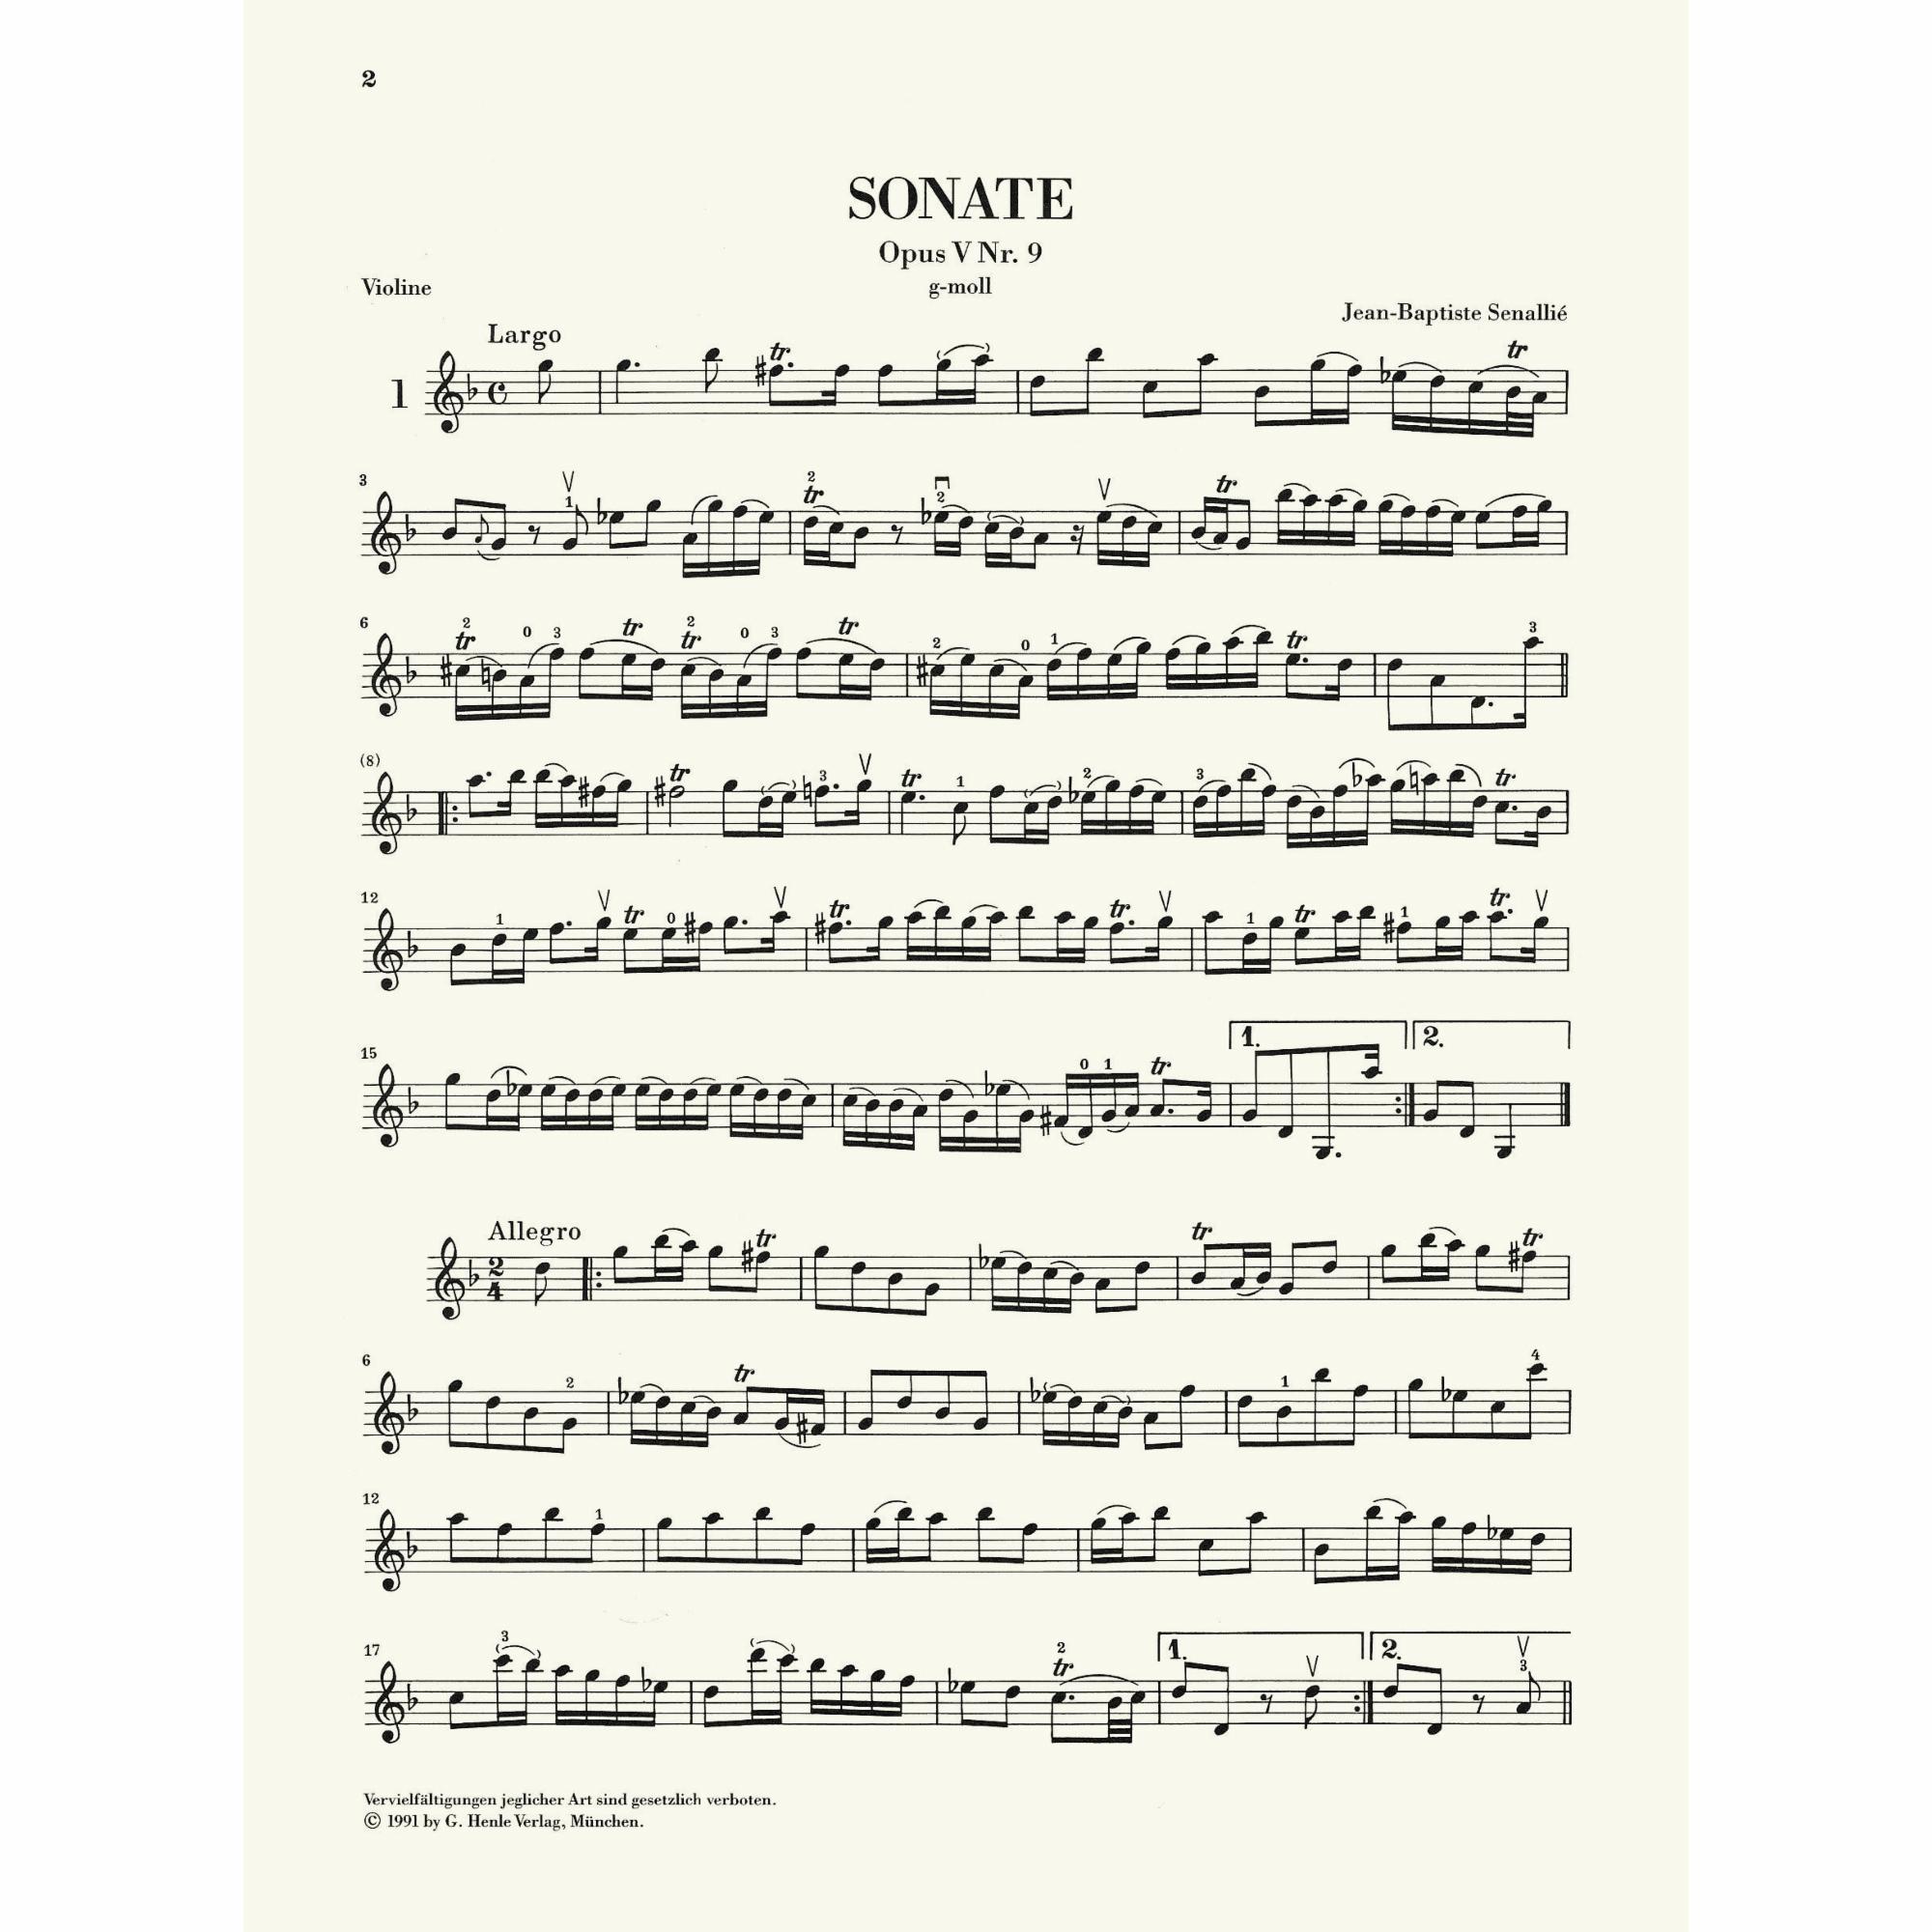 Sample: Vol. I, Violin Part